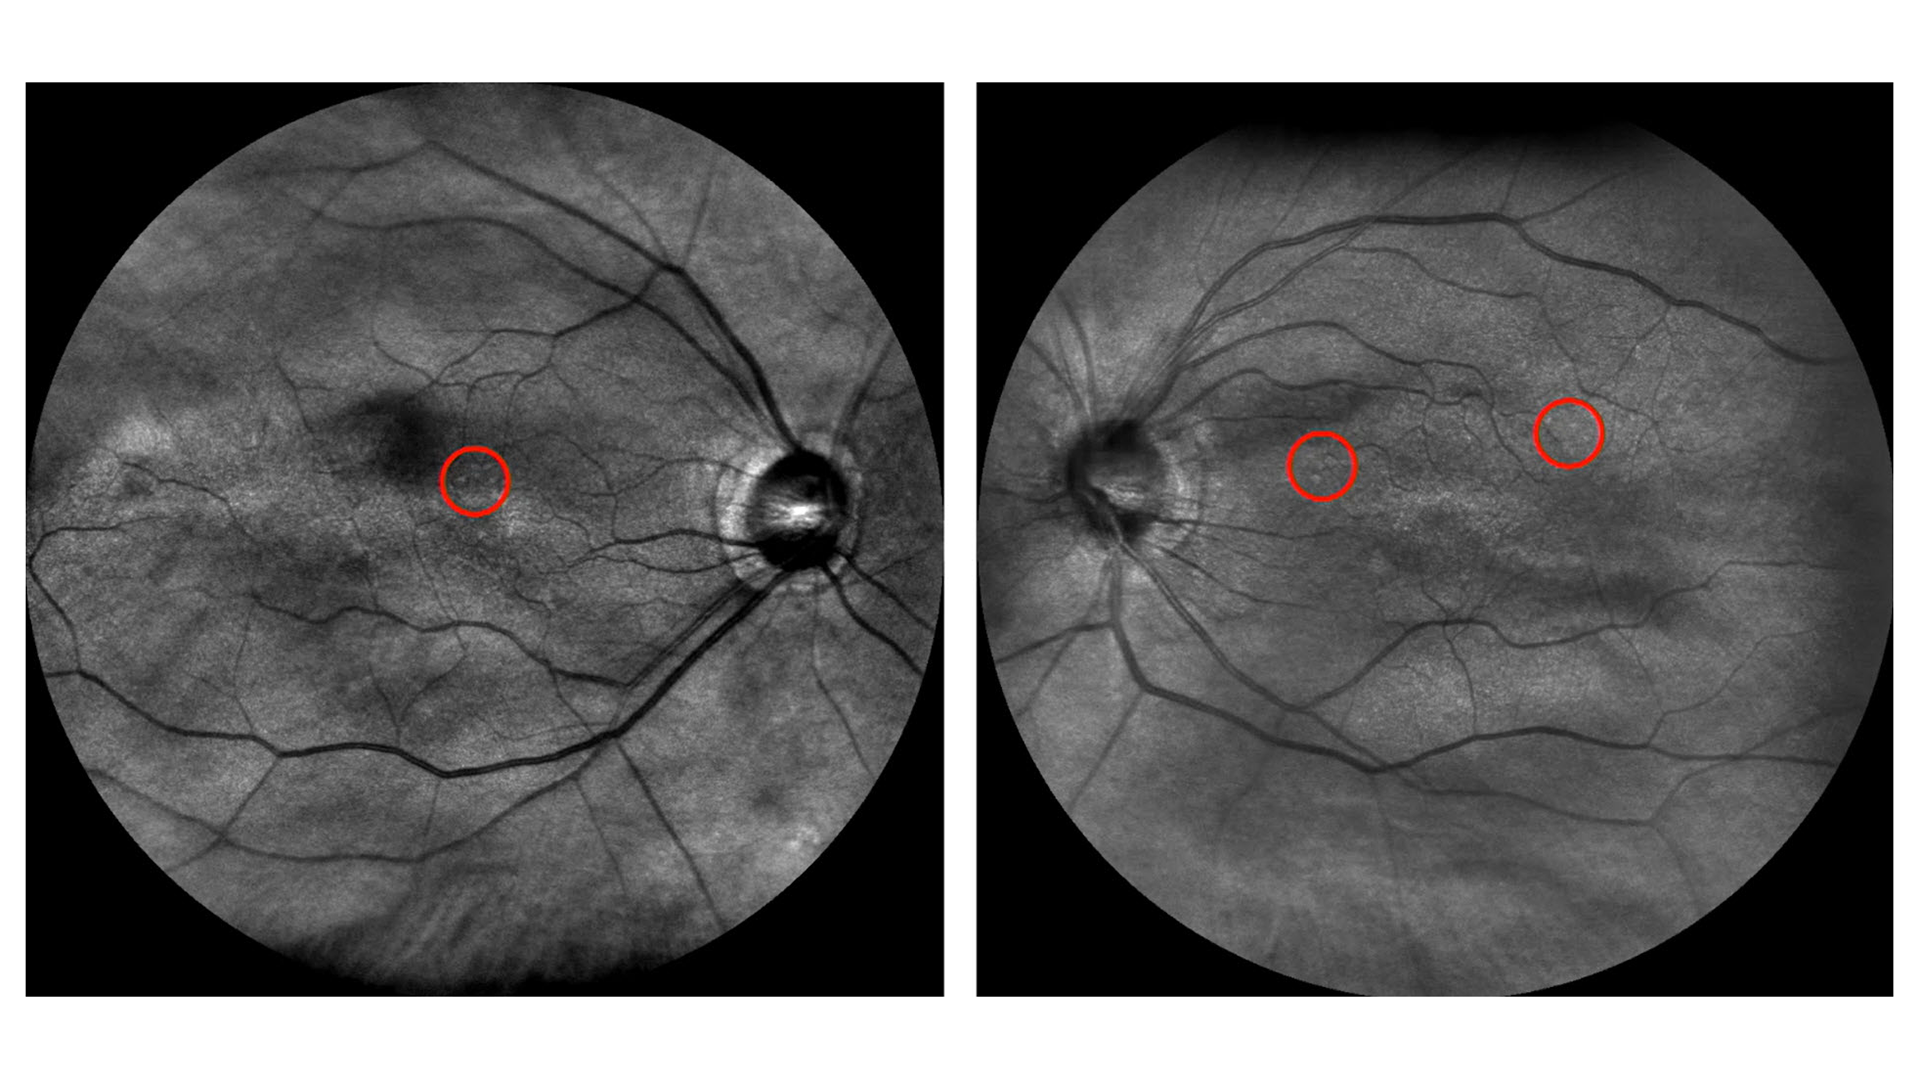 Sichtkontakte Vortrag Optometrische Praxis: Untersuchungsergebnisse richtig einschätzen